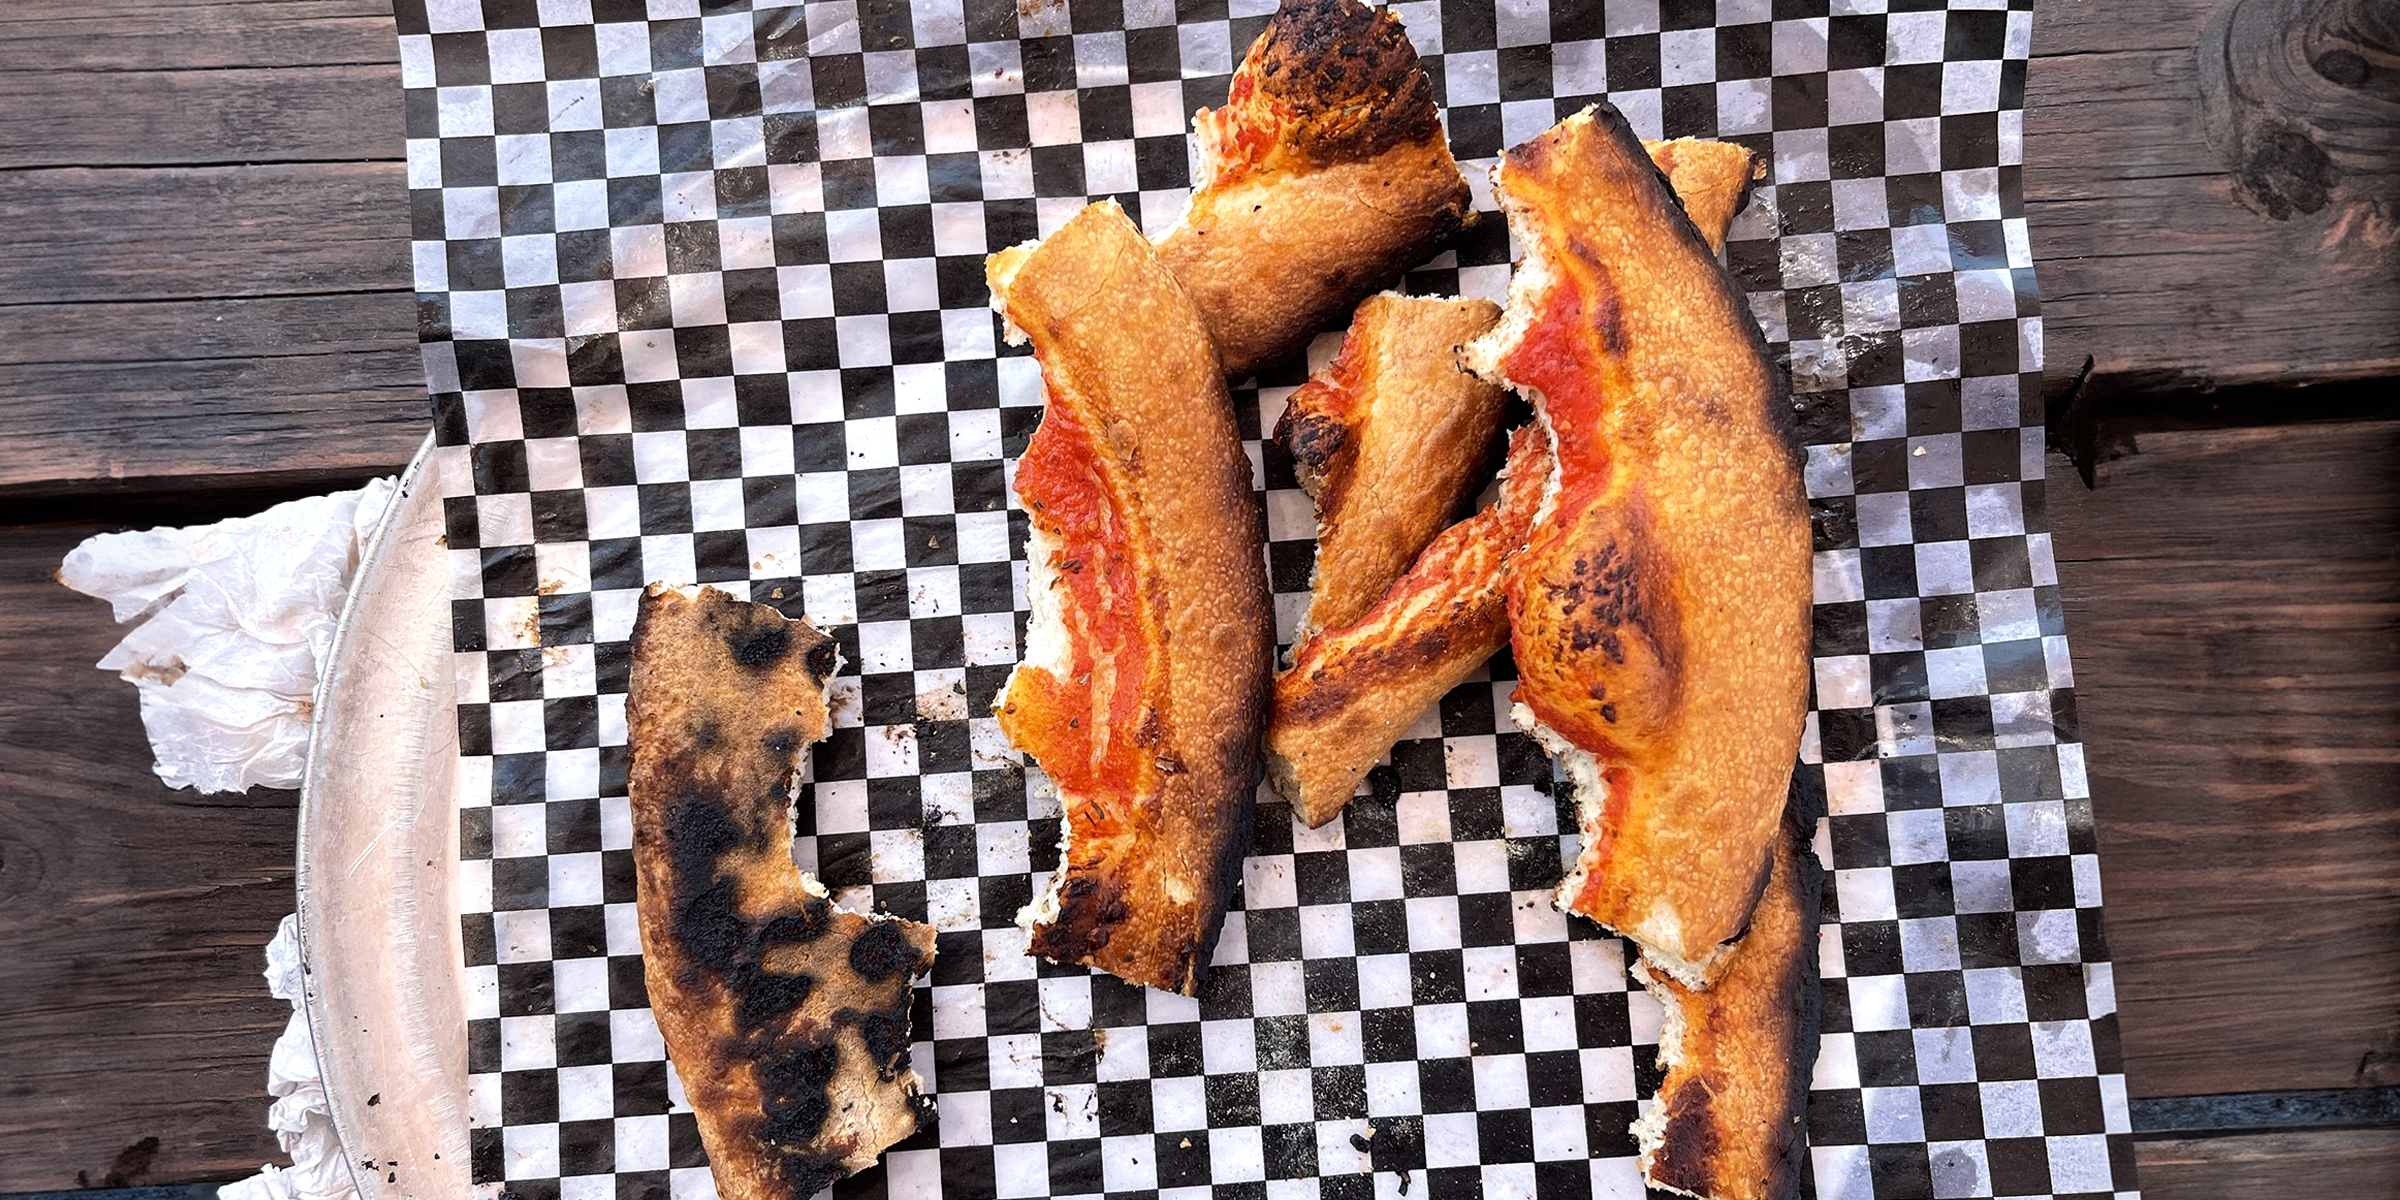 Un montón de cortezas de pizza quemadas | Fuente: Flickr.com/sarahstierch (CC BY 2.0)